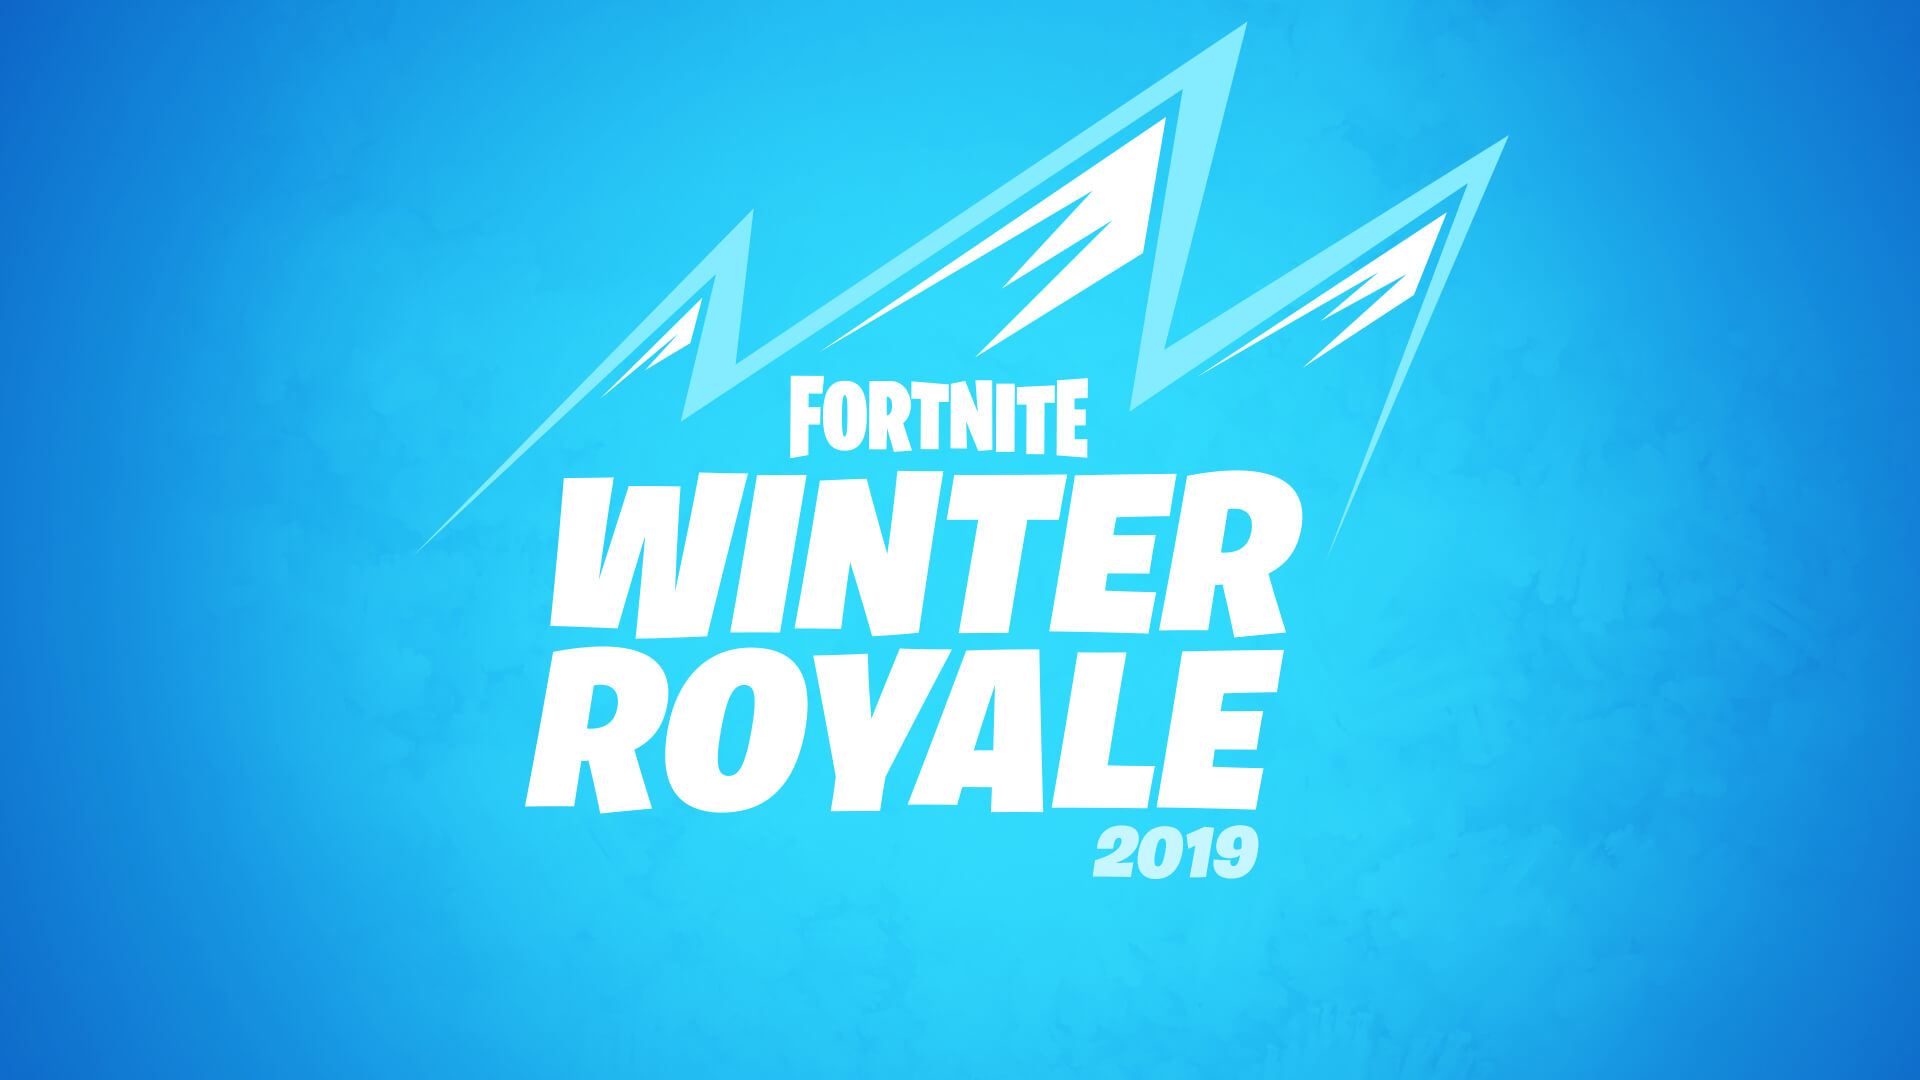 Fortnite Winter Royale 2019